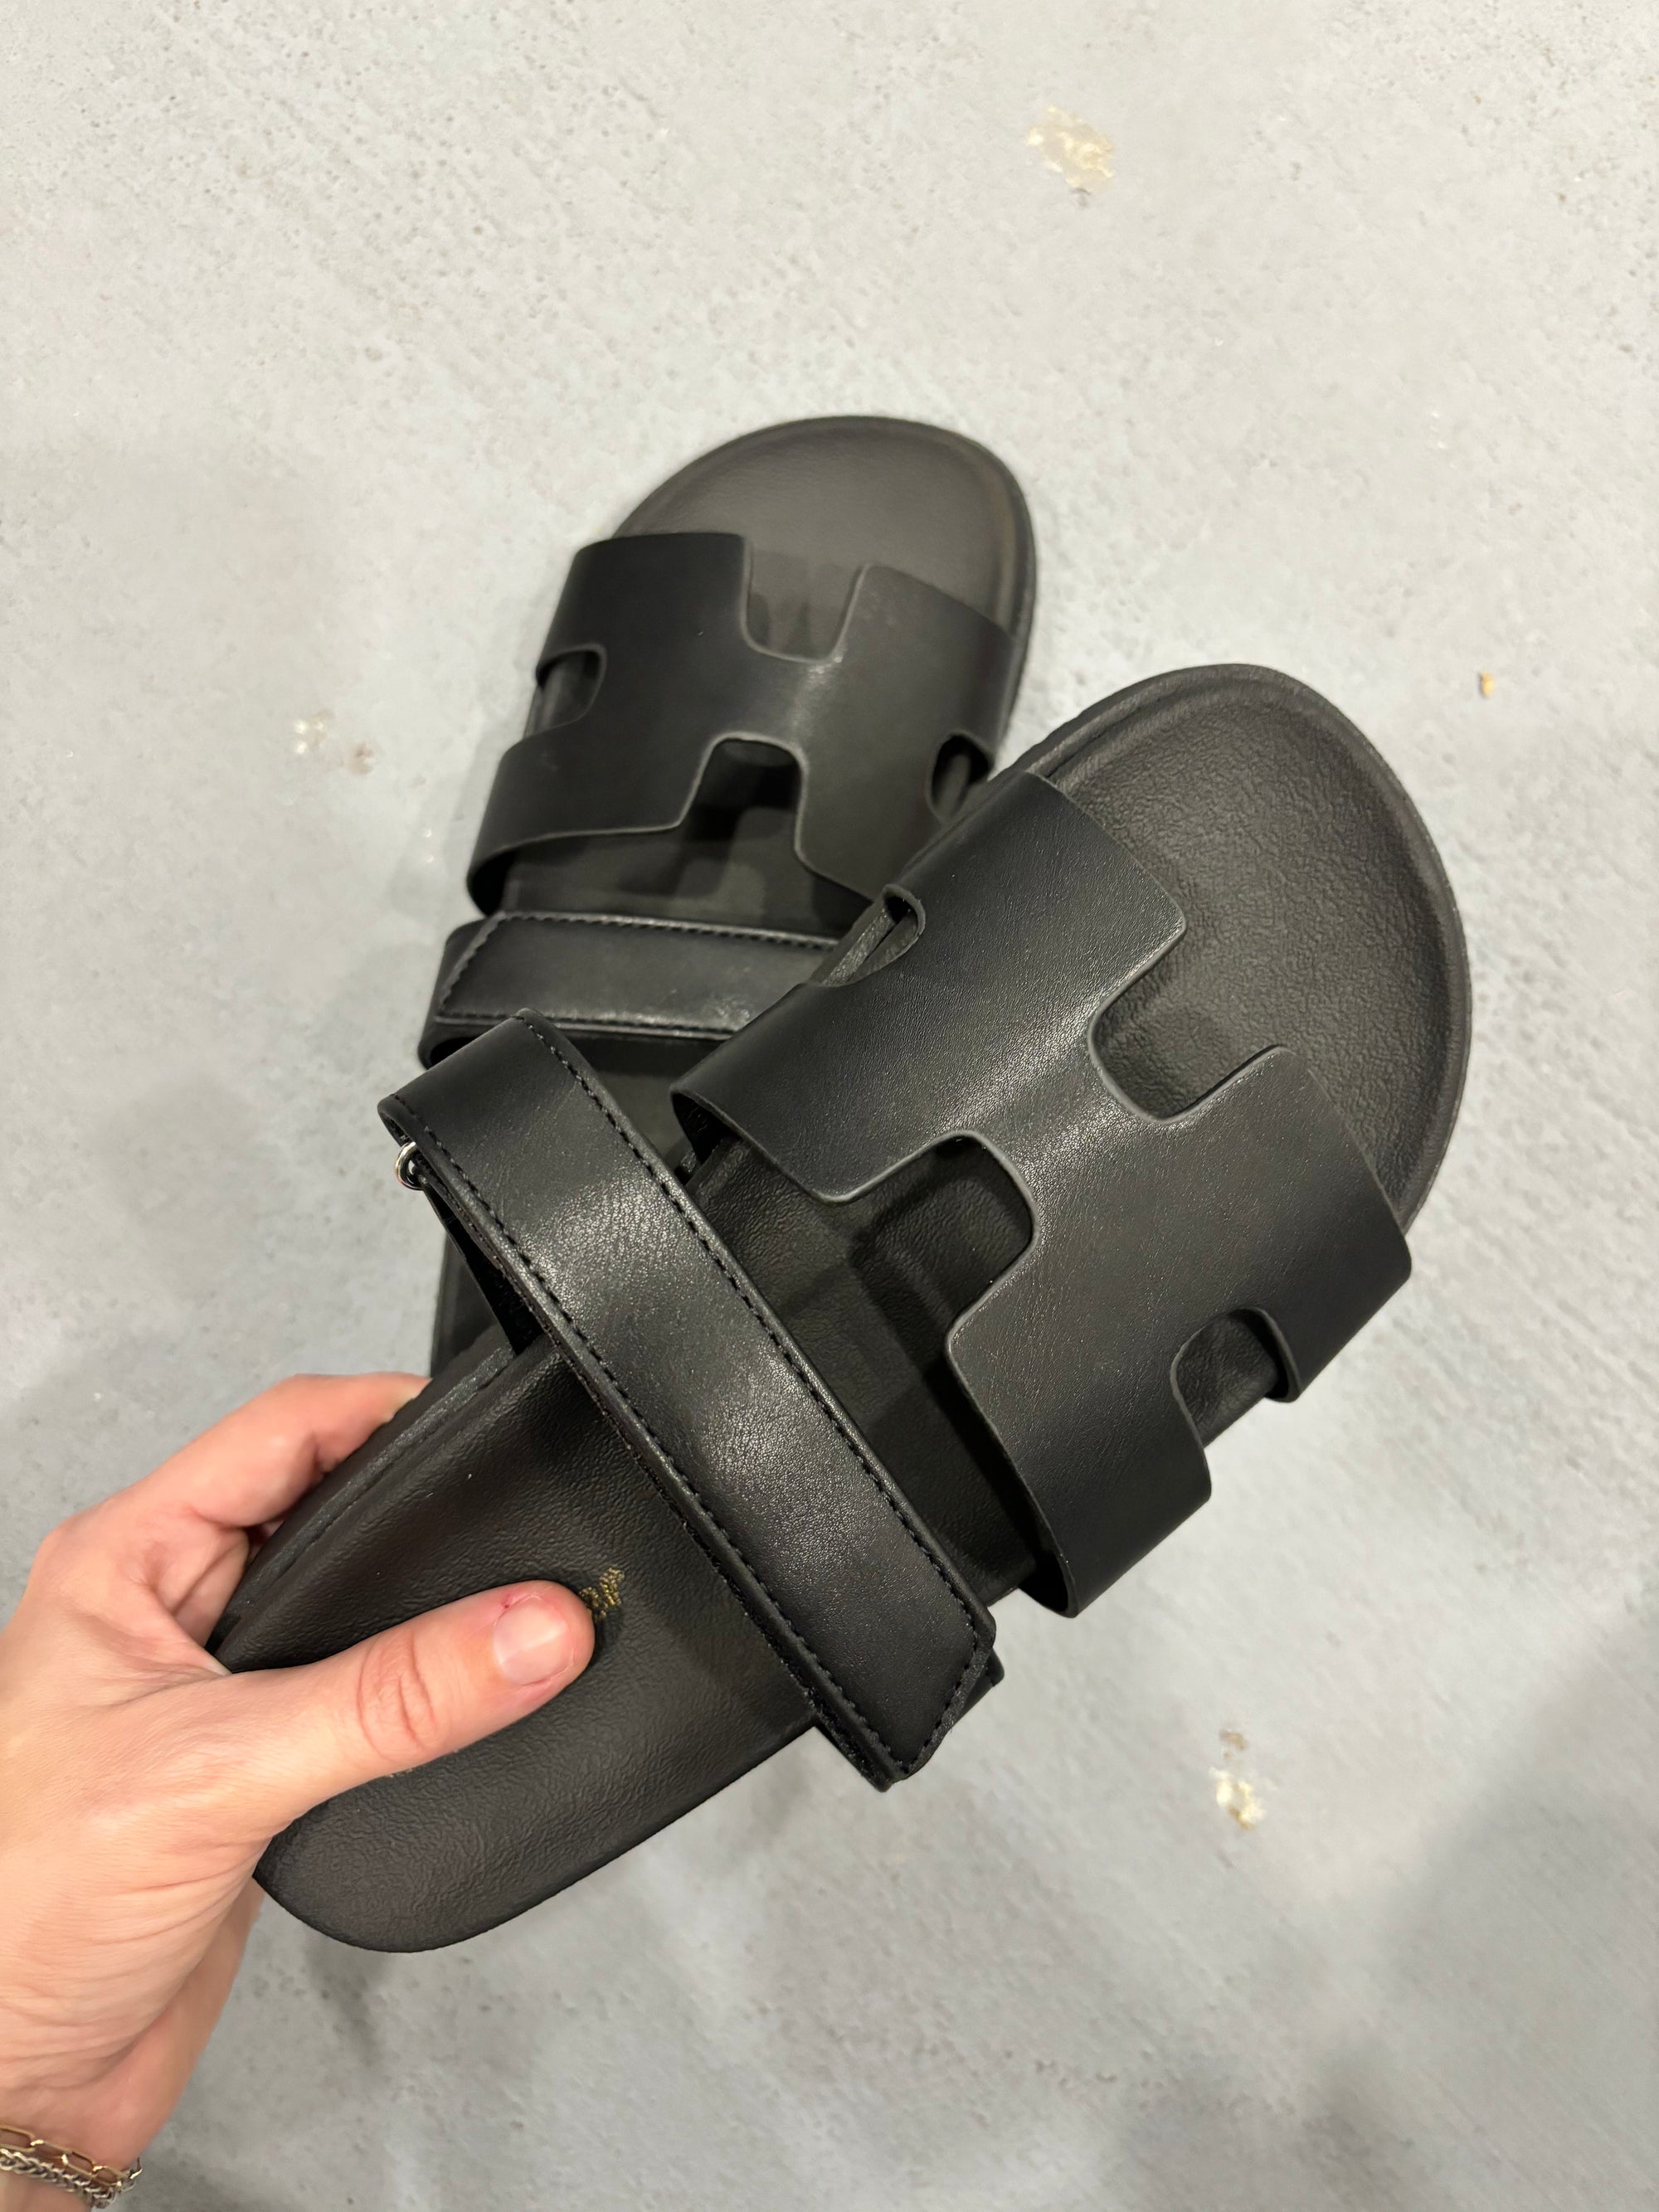 Black Velcro Sandal